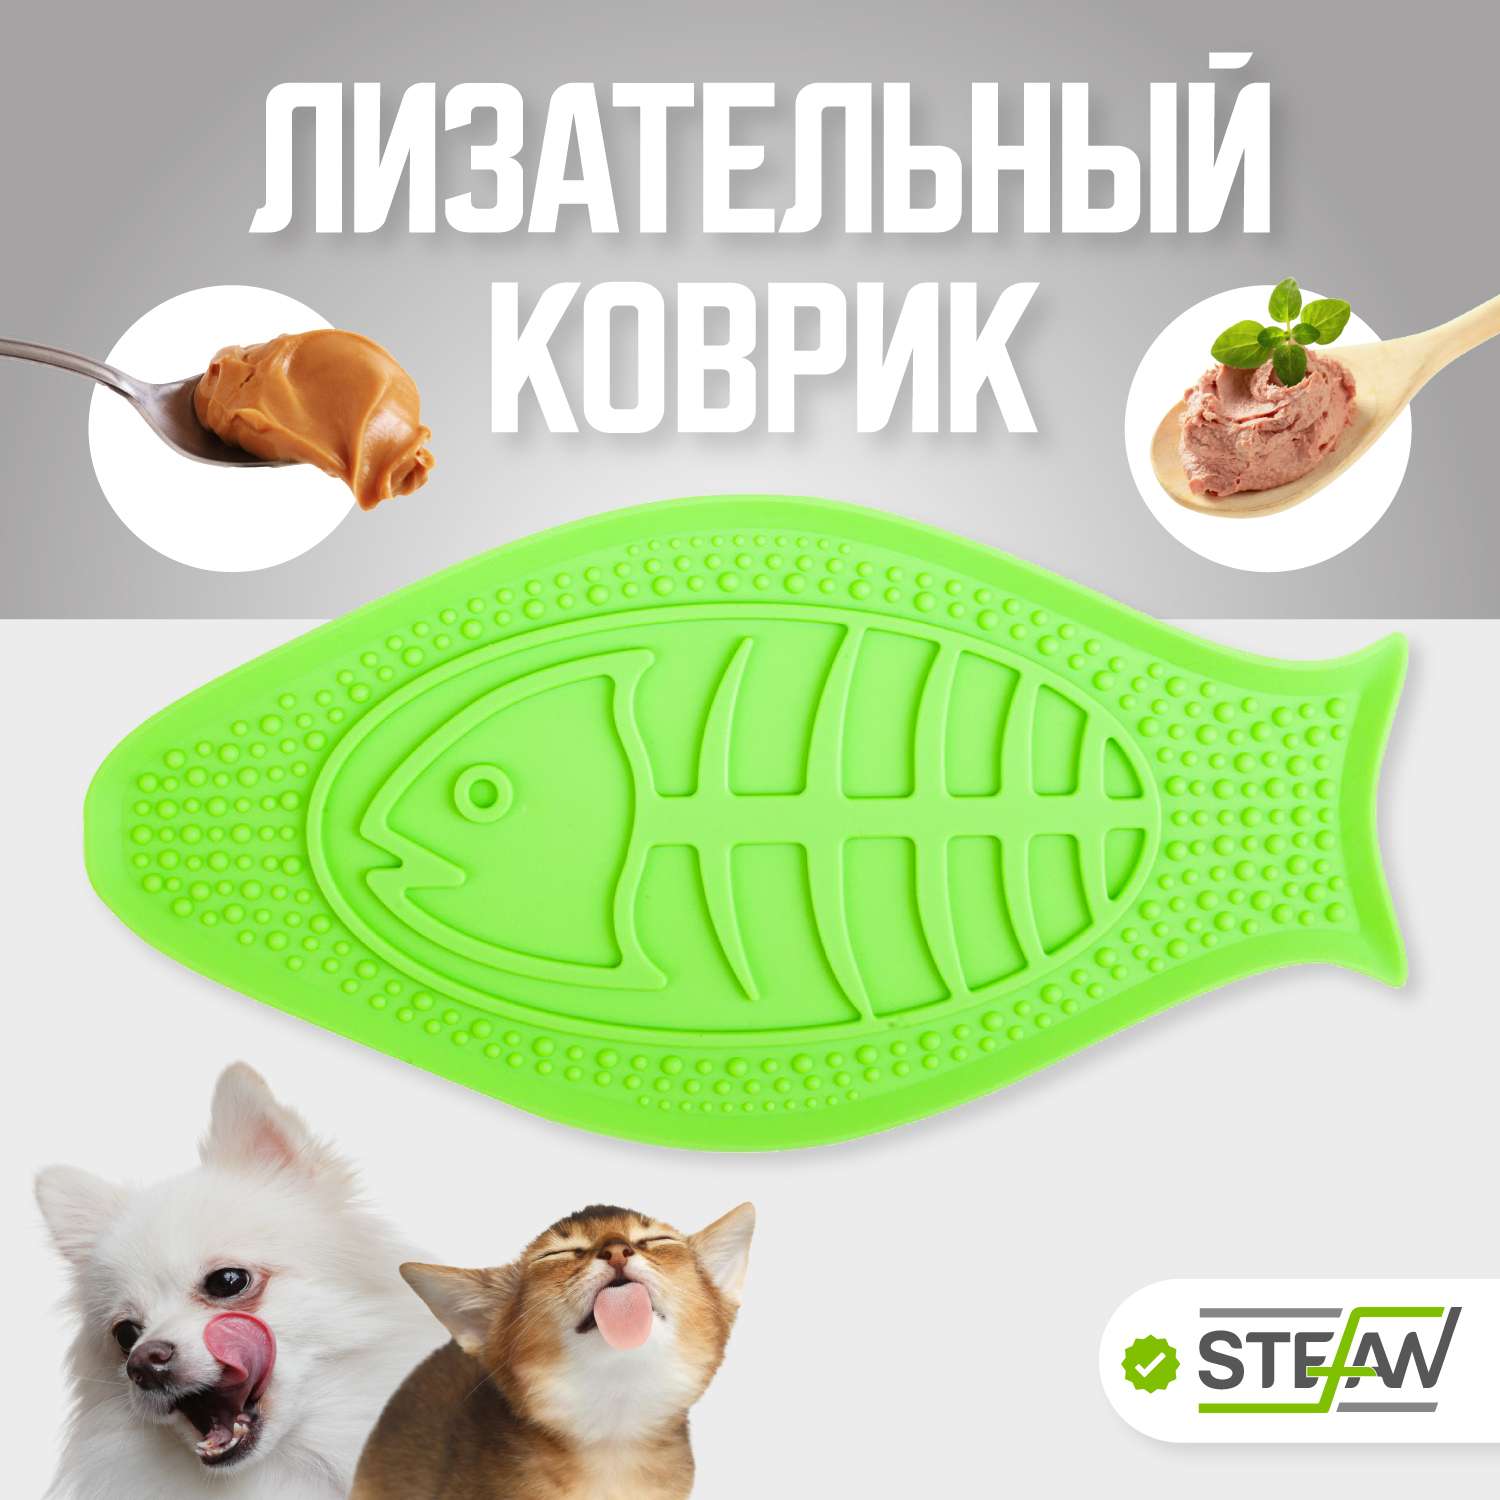 Миска для собак Stefan силиконовая лизательная зеленая - фото 1